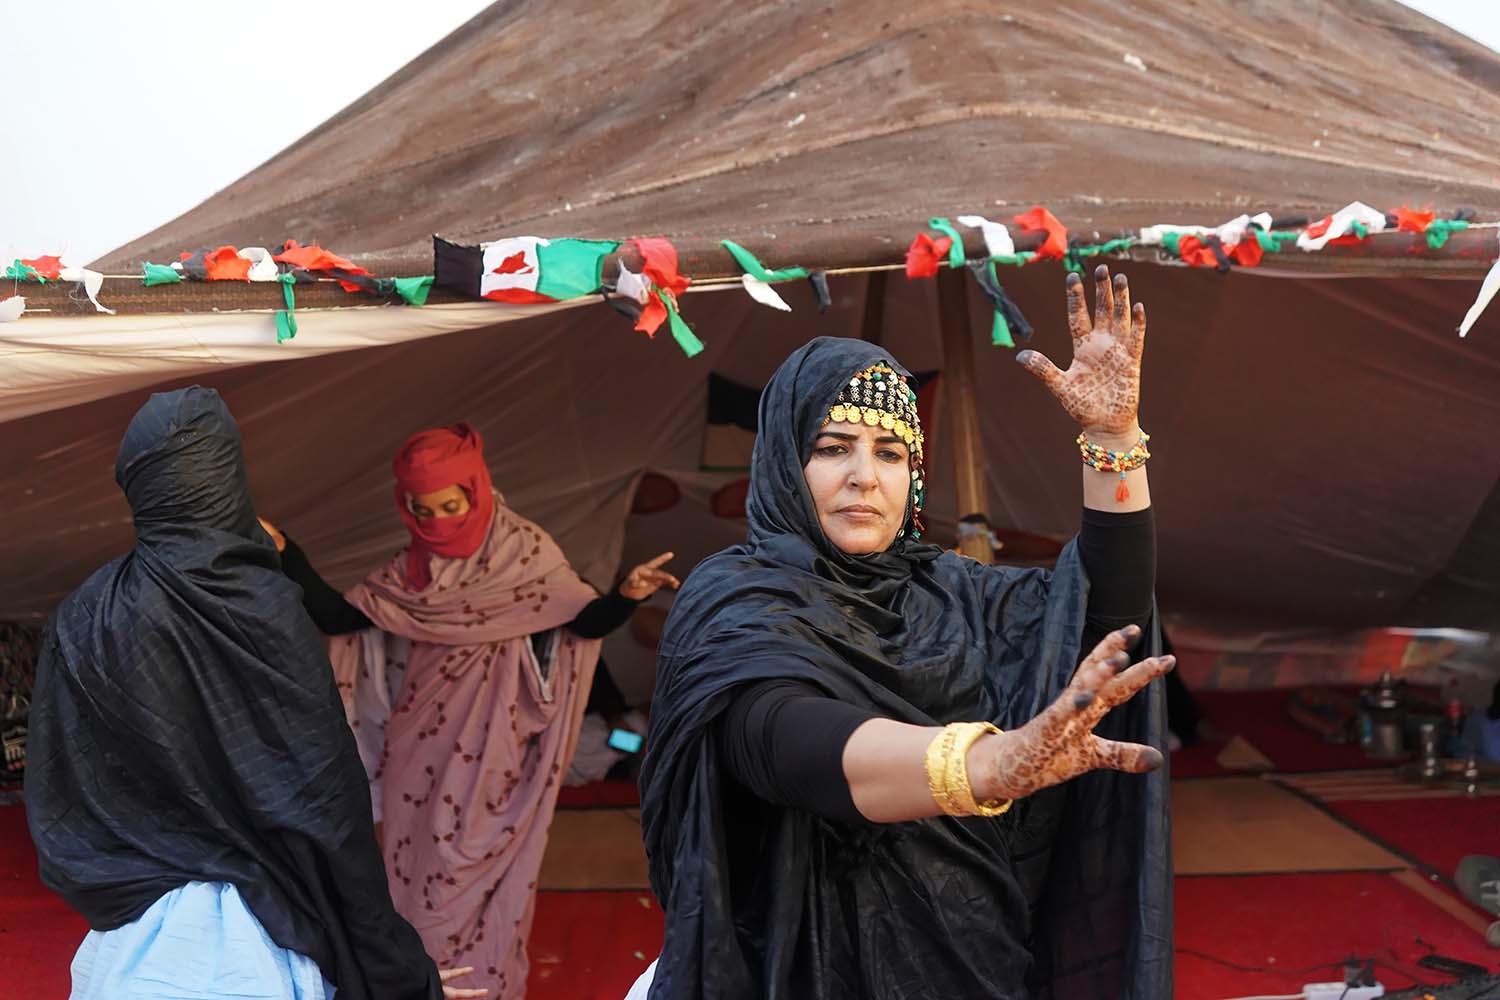 Mujeres saharauis actúan fuera de una tienda tradicional con banderas del Sahara Occidental en el campamento de Auserd como parte del festival FiSahara en el Sahara Occidental.